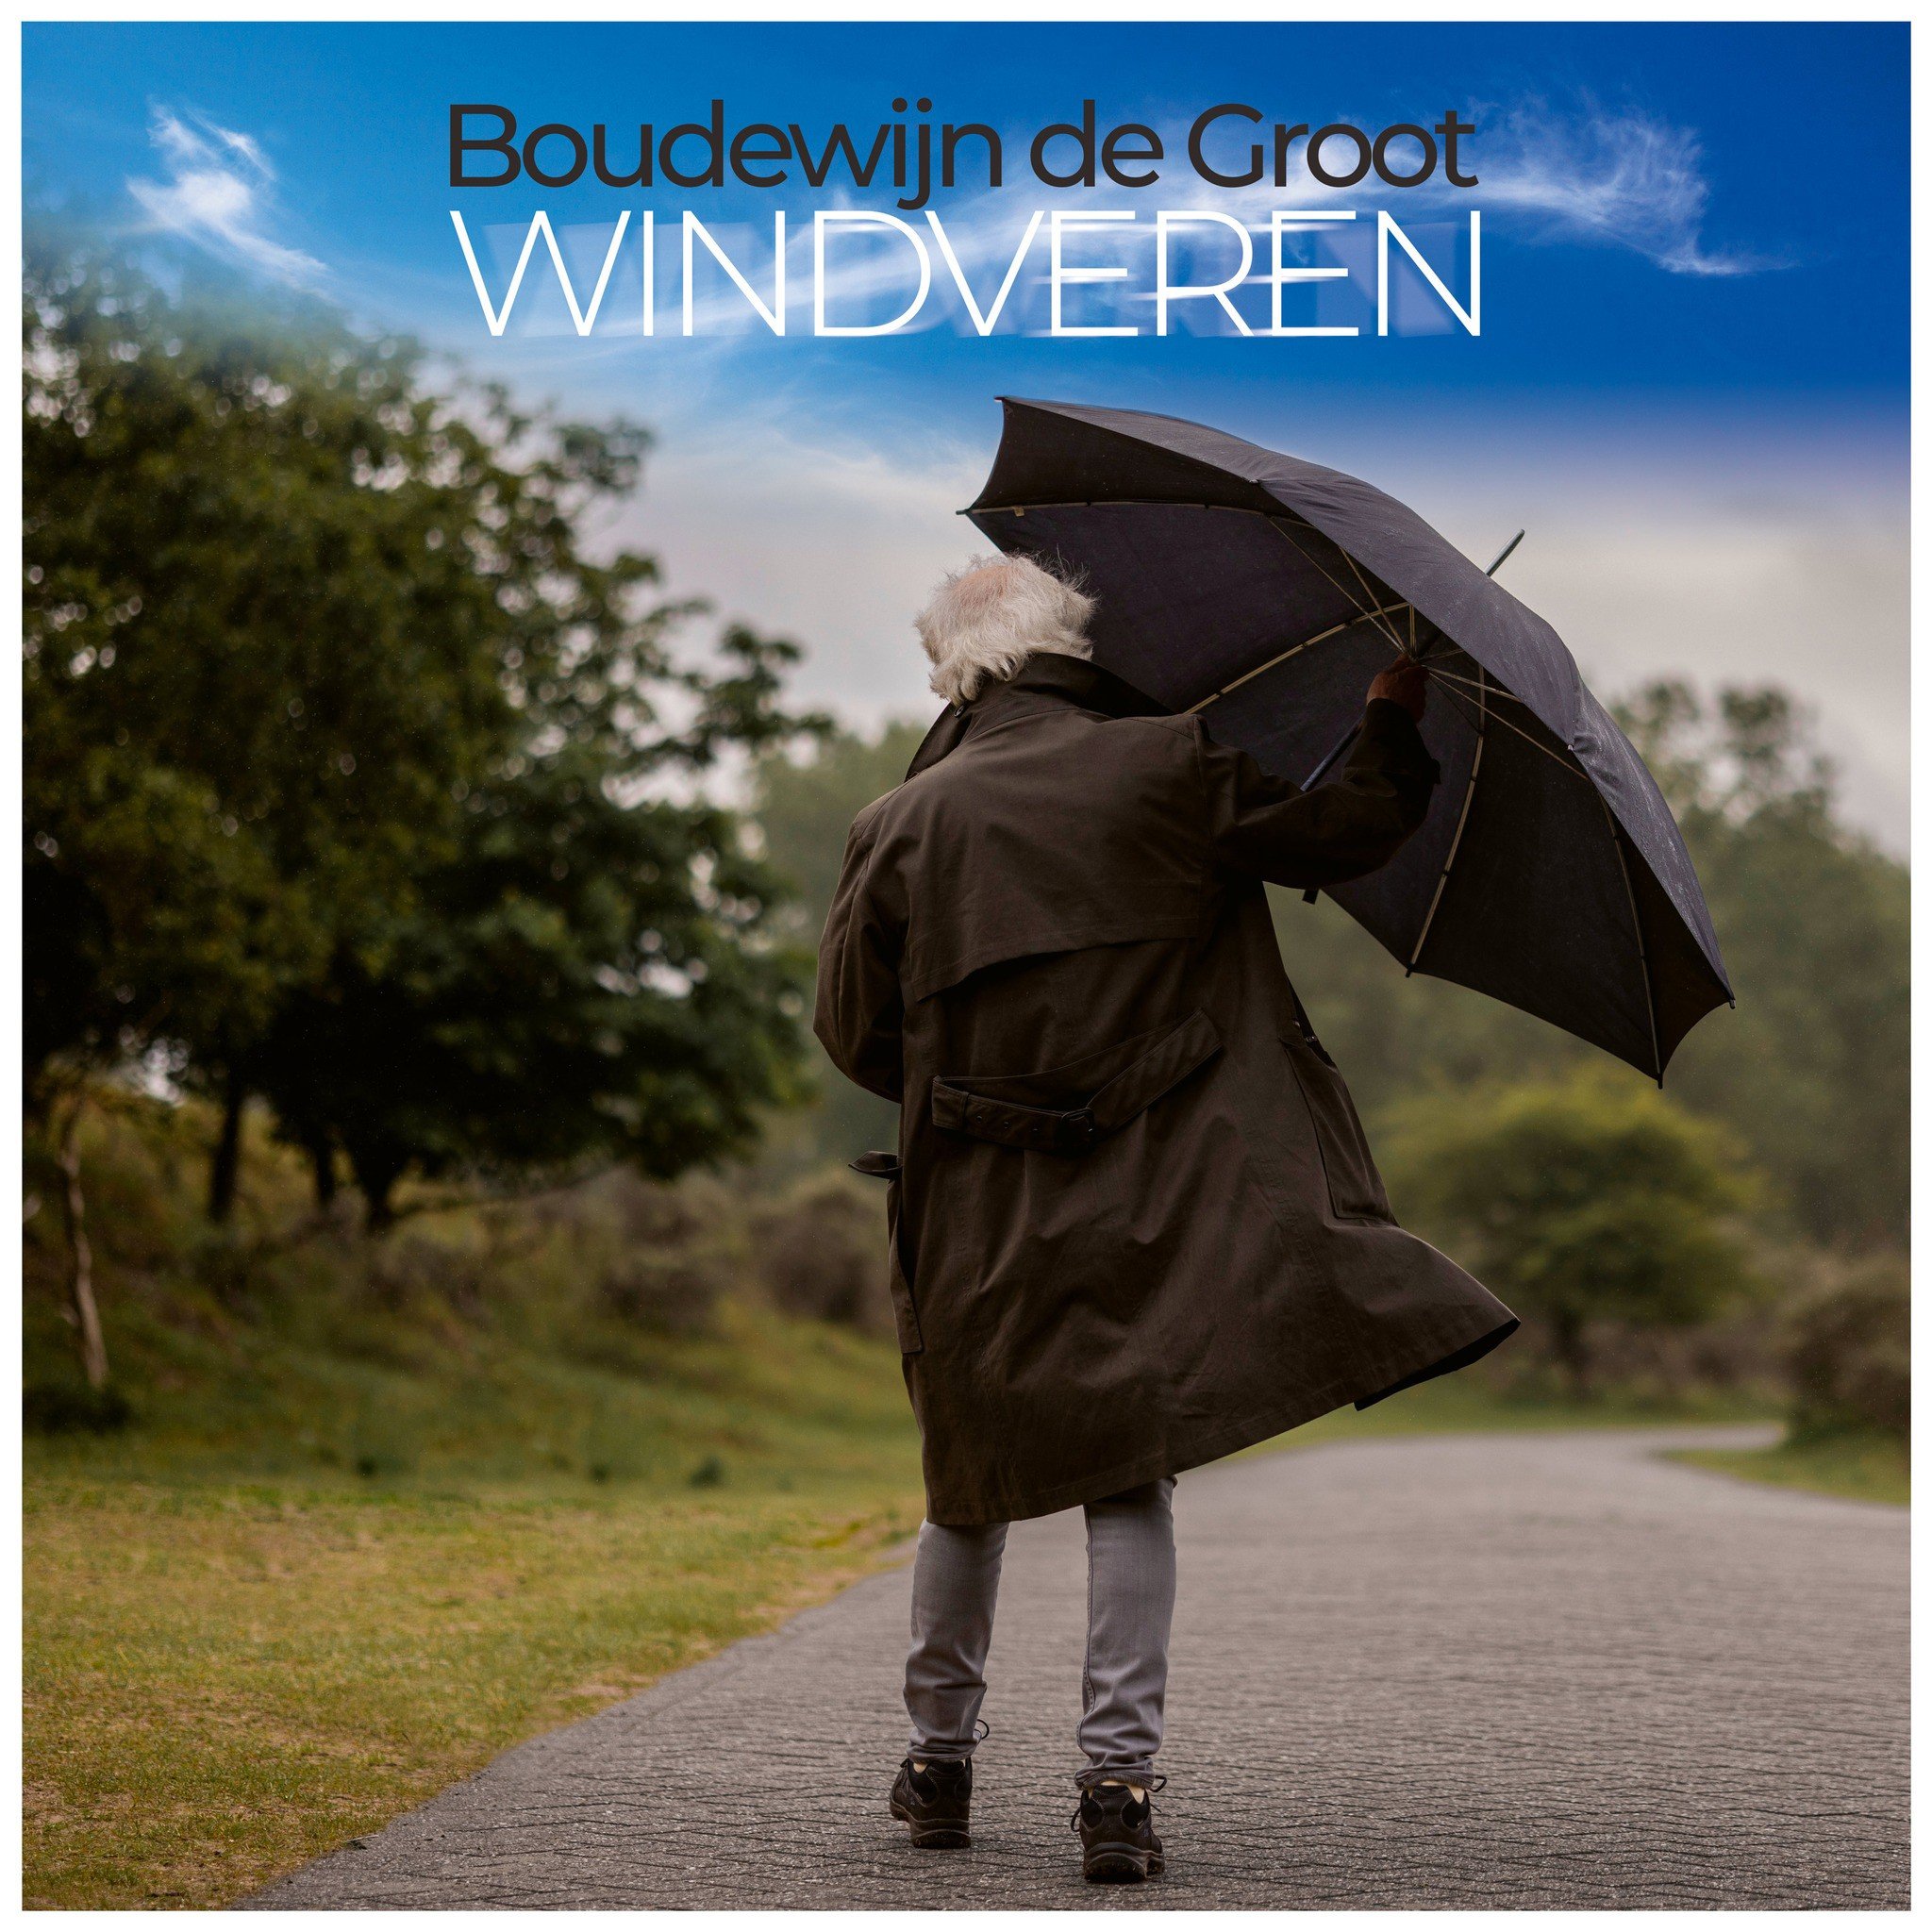 Boudewijn de Groot - Windveren (LP)